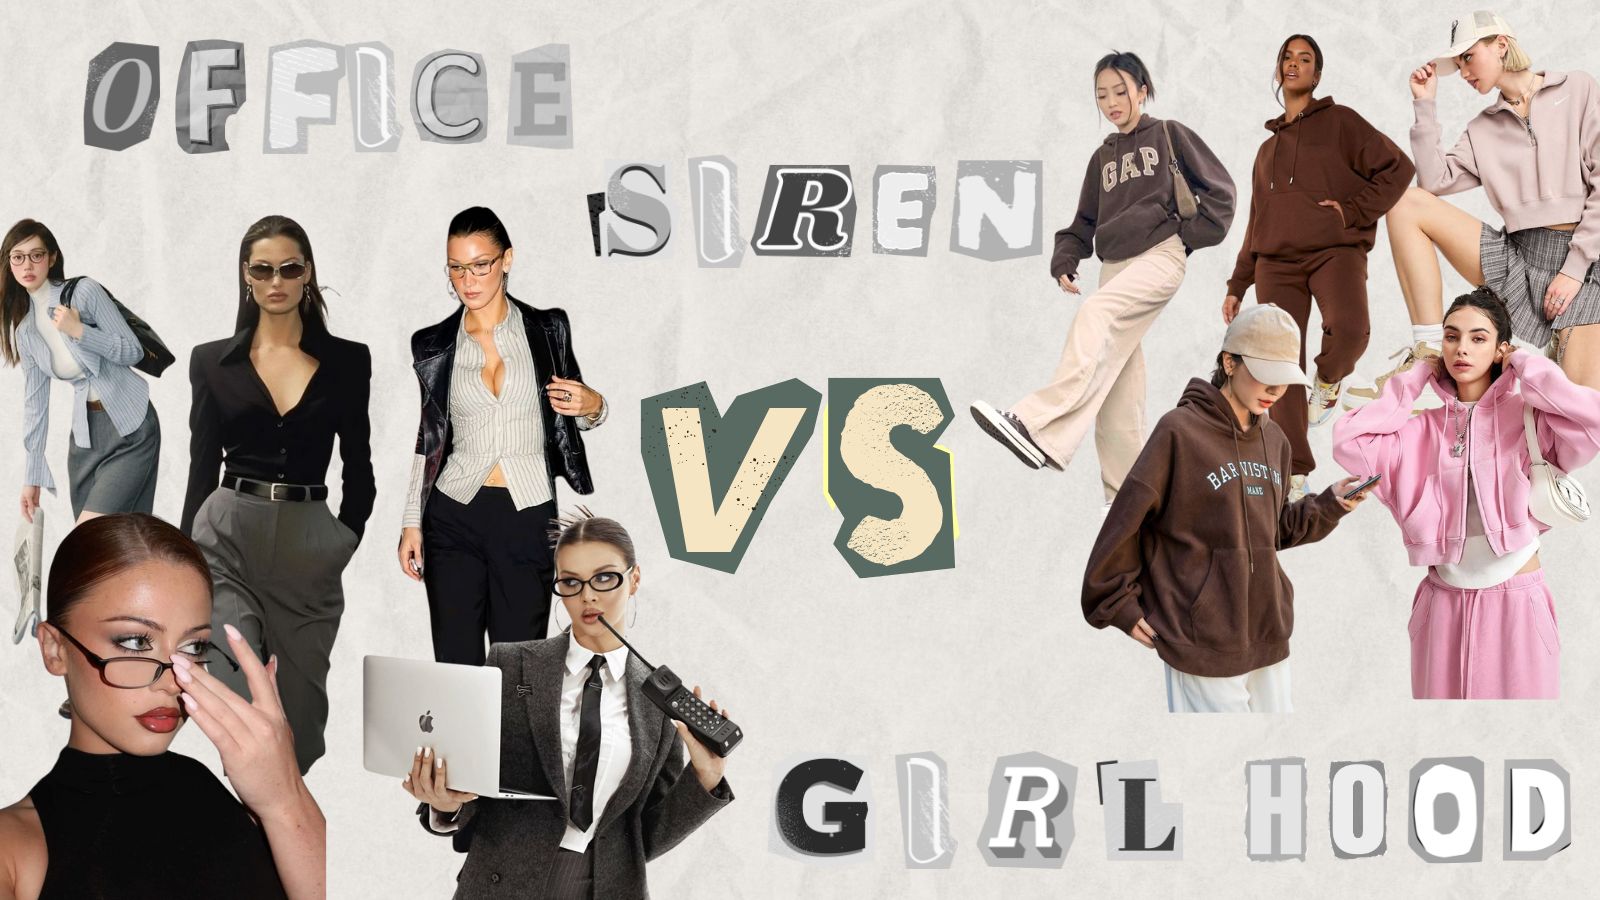 Office Siren VS Girl Hood Trends for Women